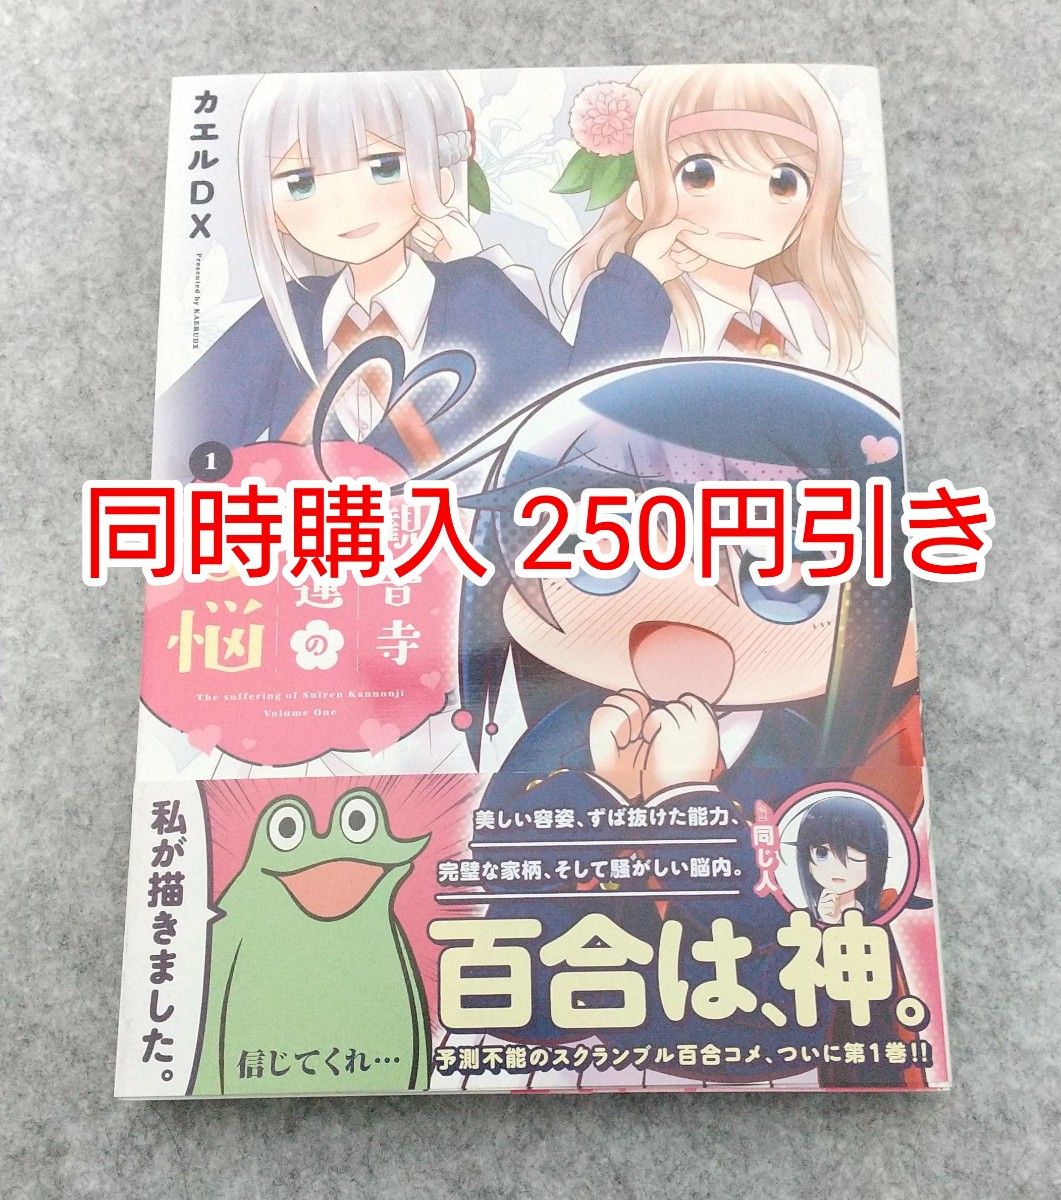 初版 観音寺睡蓮の苦悩 1巻 カエルDX 漫画 コミック まとめ売り